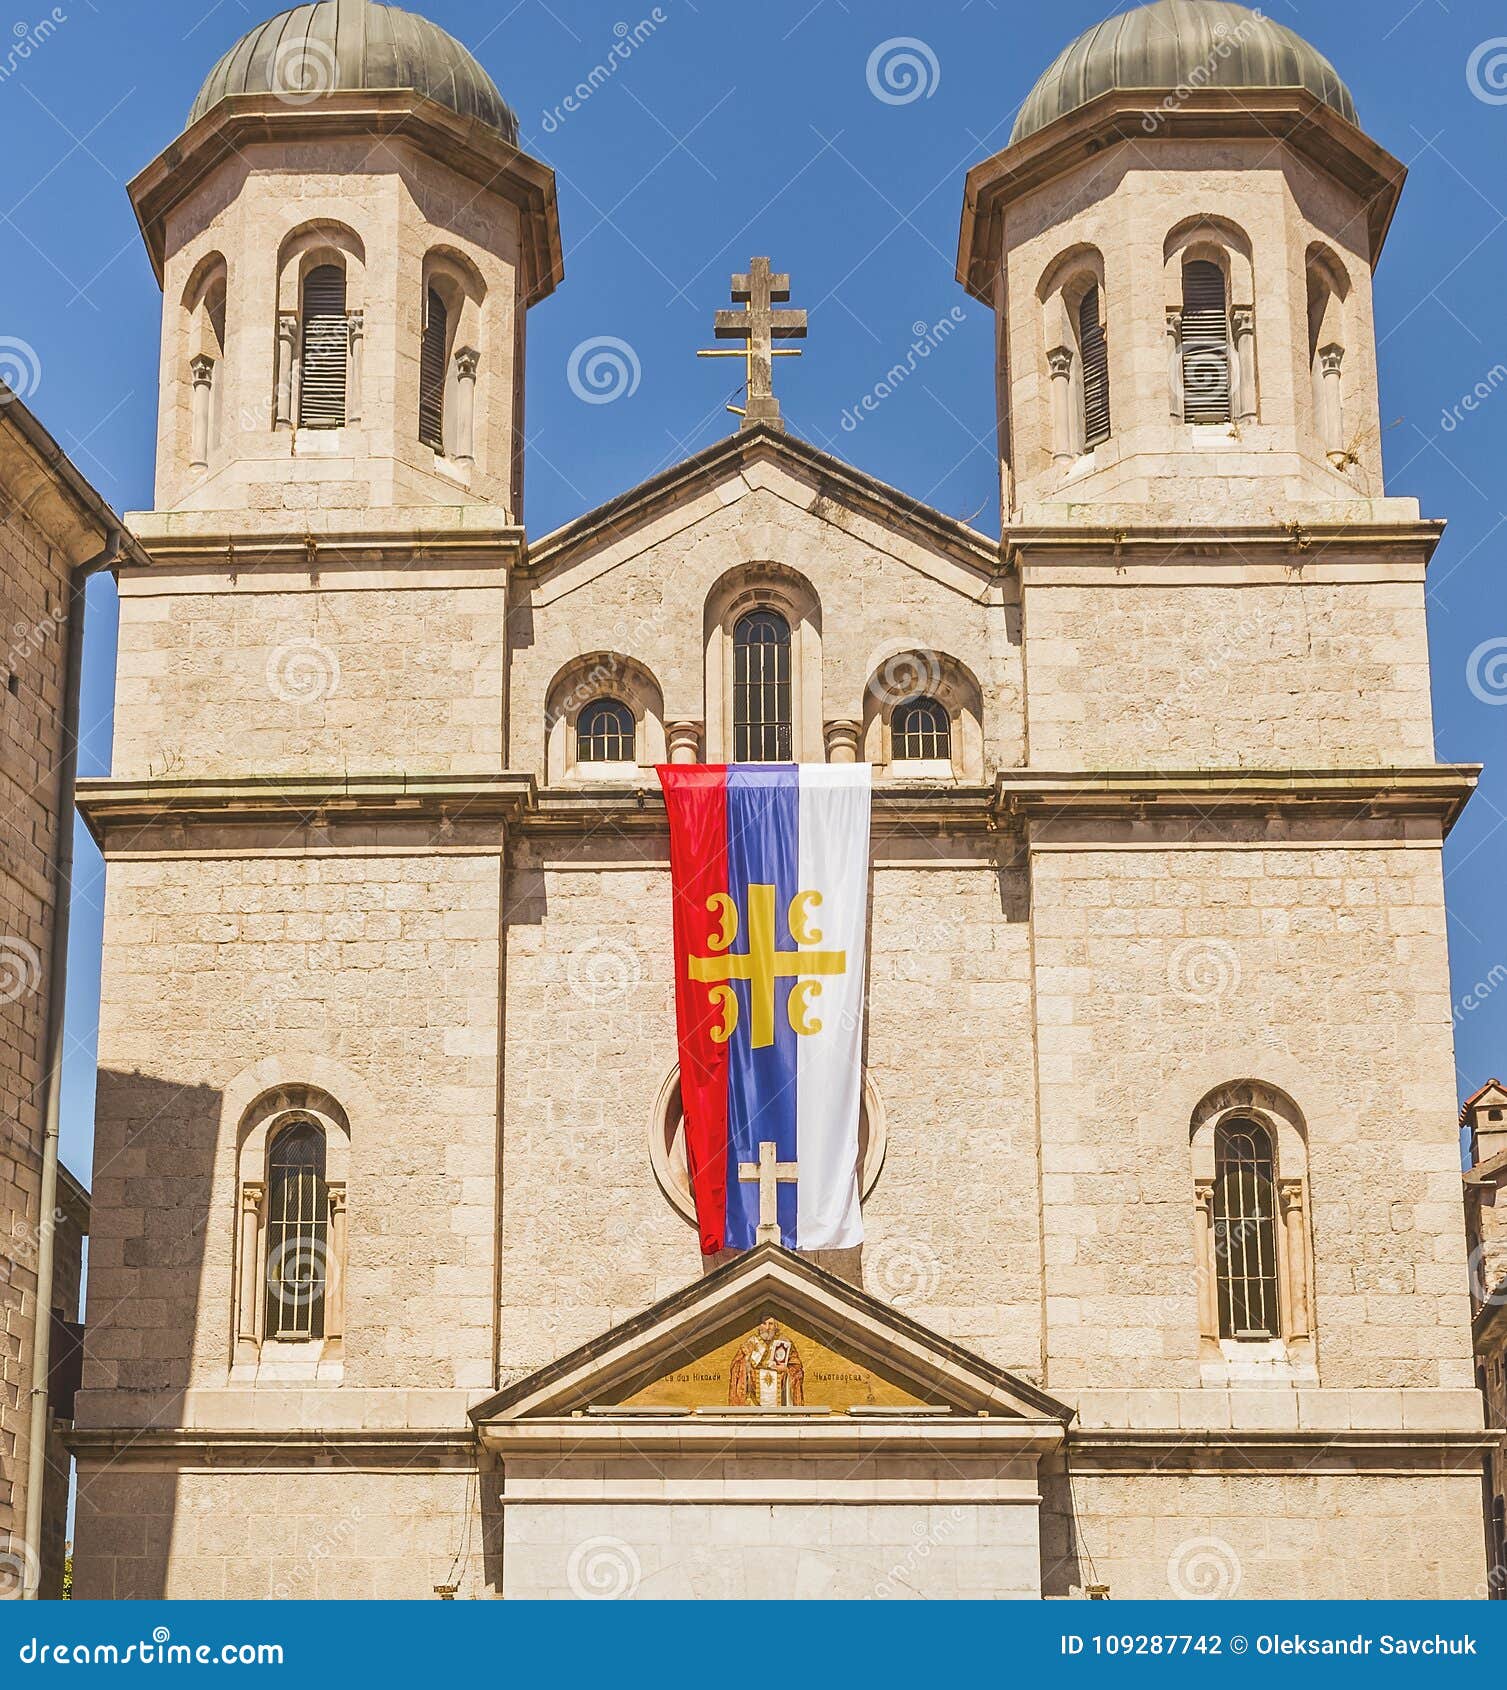 La fachada de la iglesia de San Nicolás en un día de verano en la ciudad vieja de Kotor, Montenegro. Esta imagen era Montenegro admitido